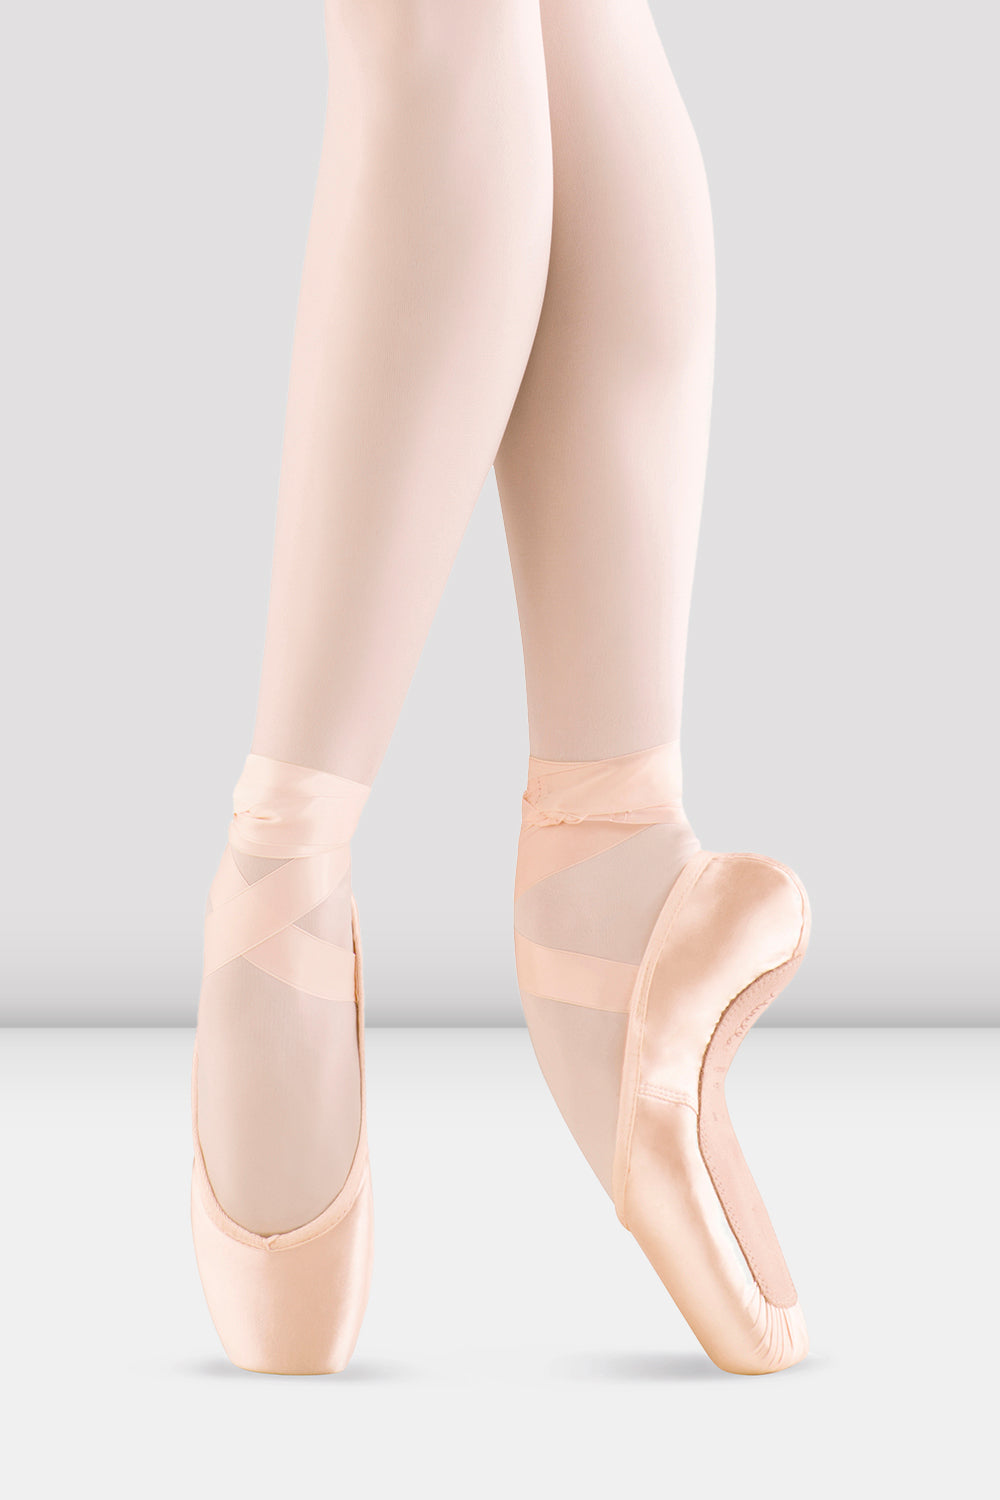 Bloch, Mirella KA026P-Laser Cut Legging